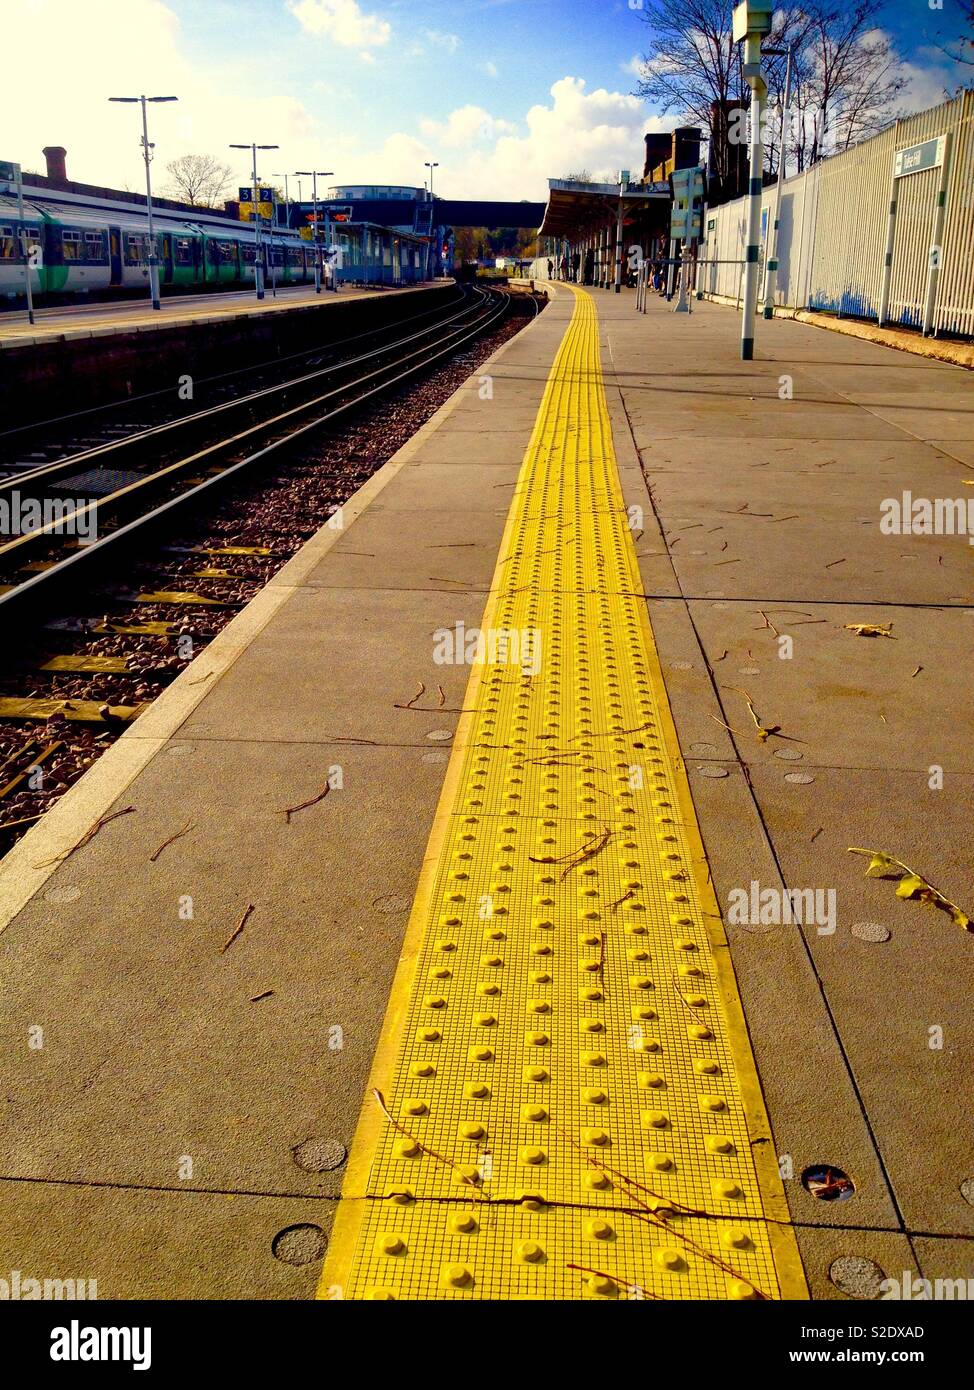 La plate-forme ferroviaire de la ligne de sécurité jaune Banque D'Images